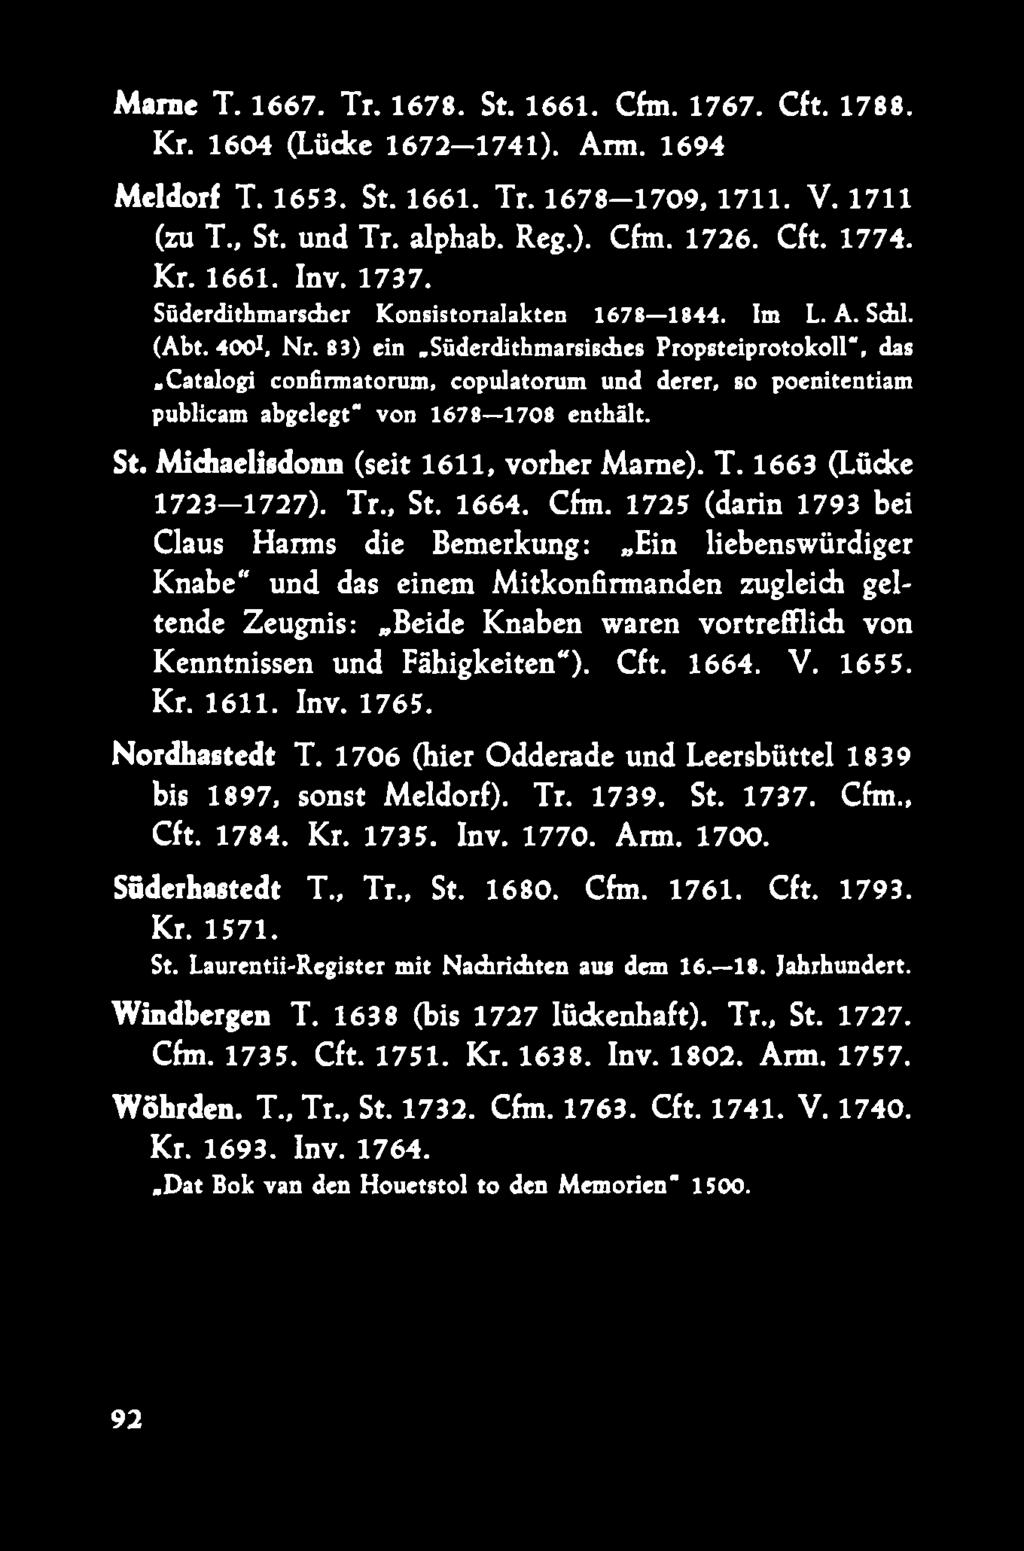 süderdithmarsisdies Propsteiprotokoll", das.catalogi confirmatorum, copulatorum und derer, so poenitentiam publicam abgelegt von 1678 1708 enthält. St. Midiaelisdonn (seit 1 6 1 1, vorher Marne). T.